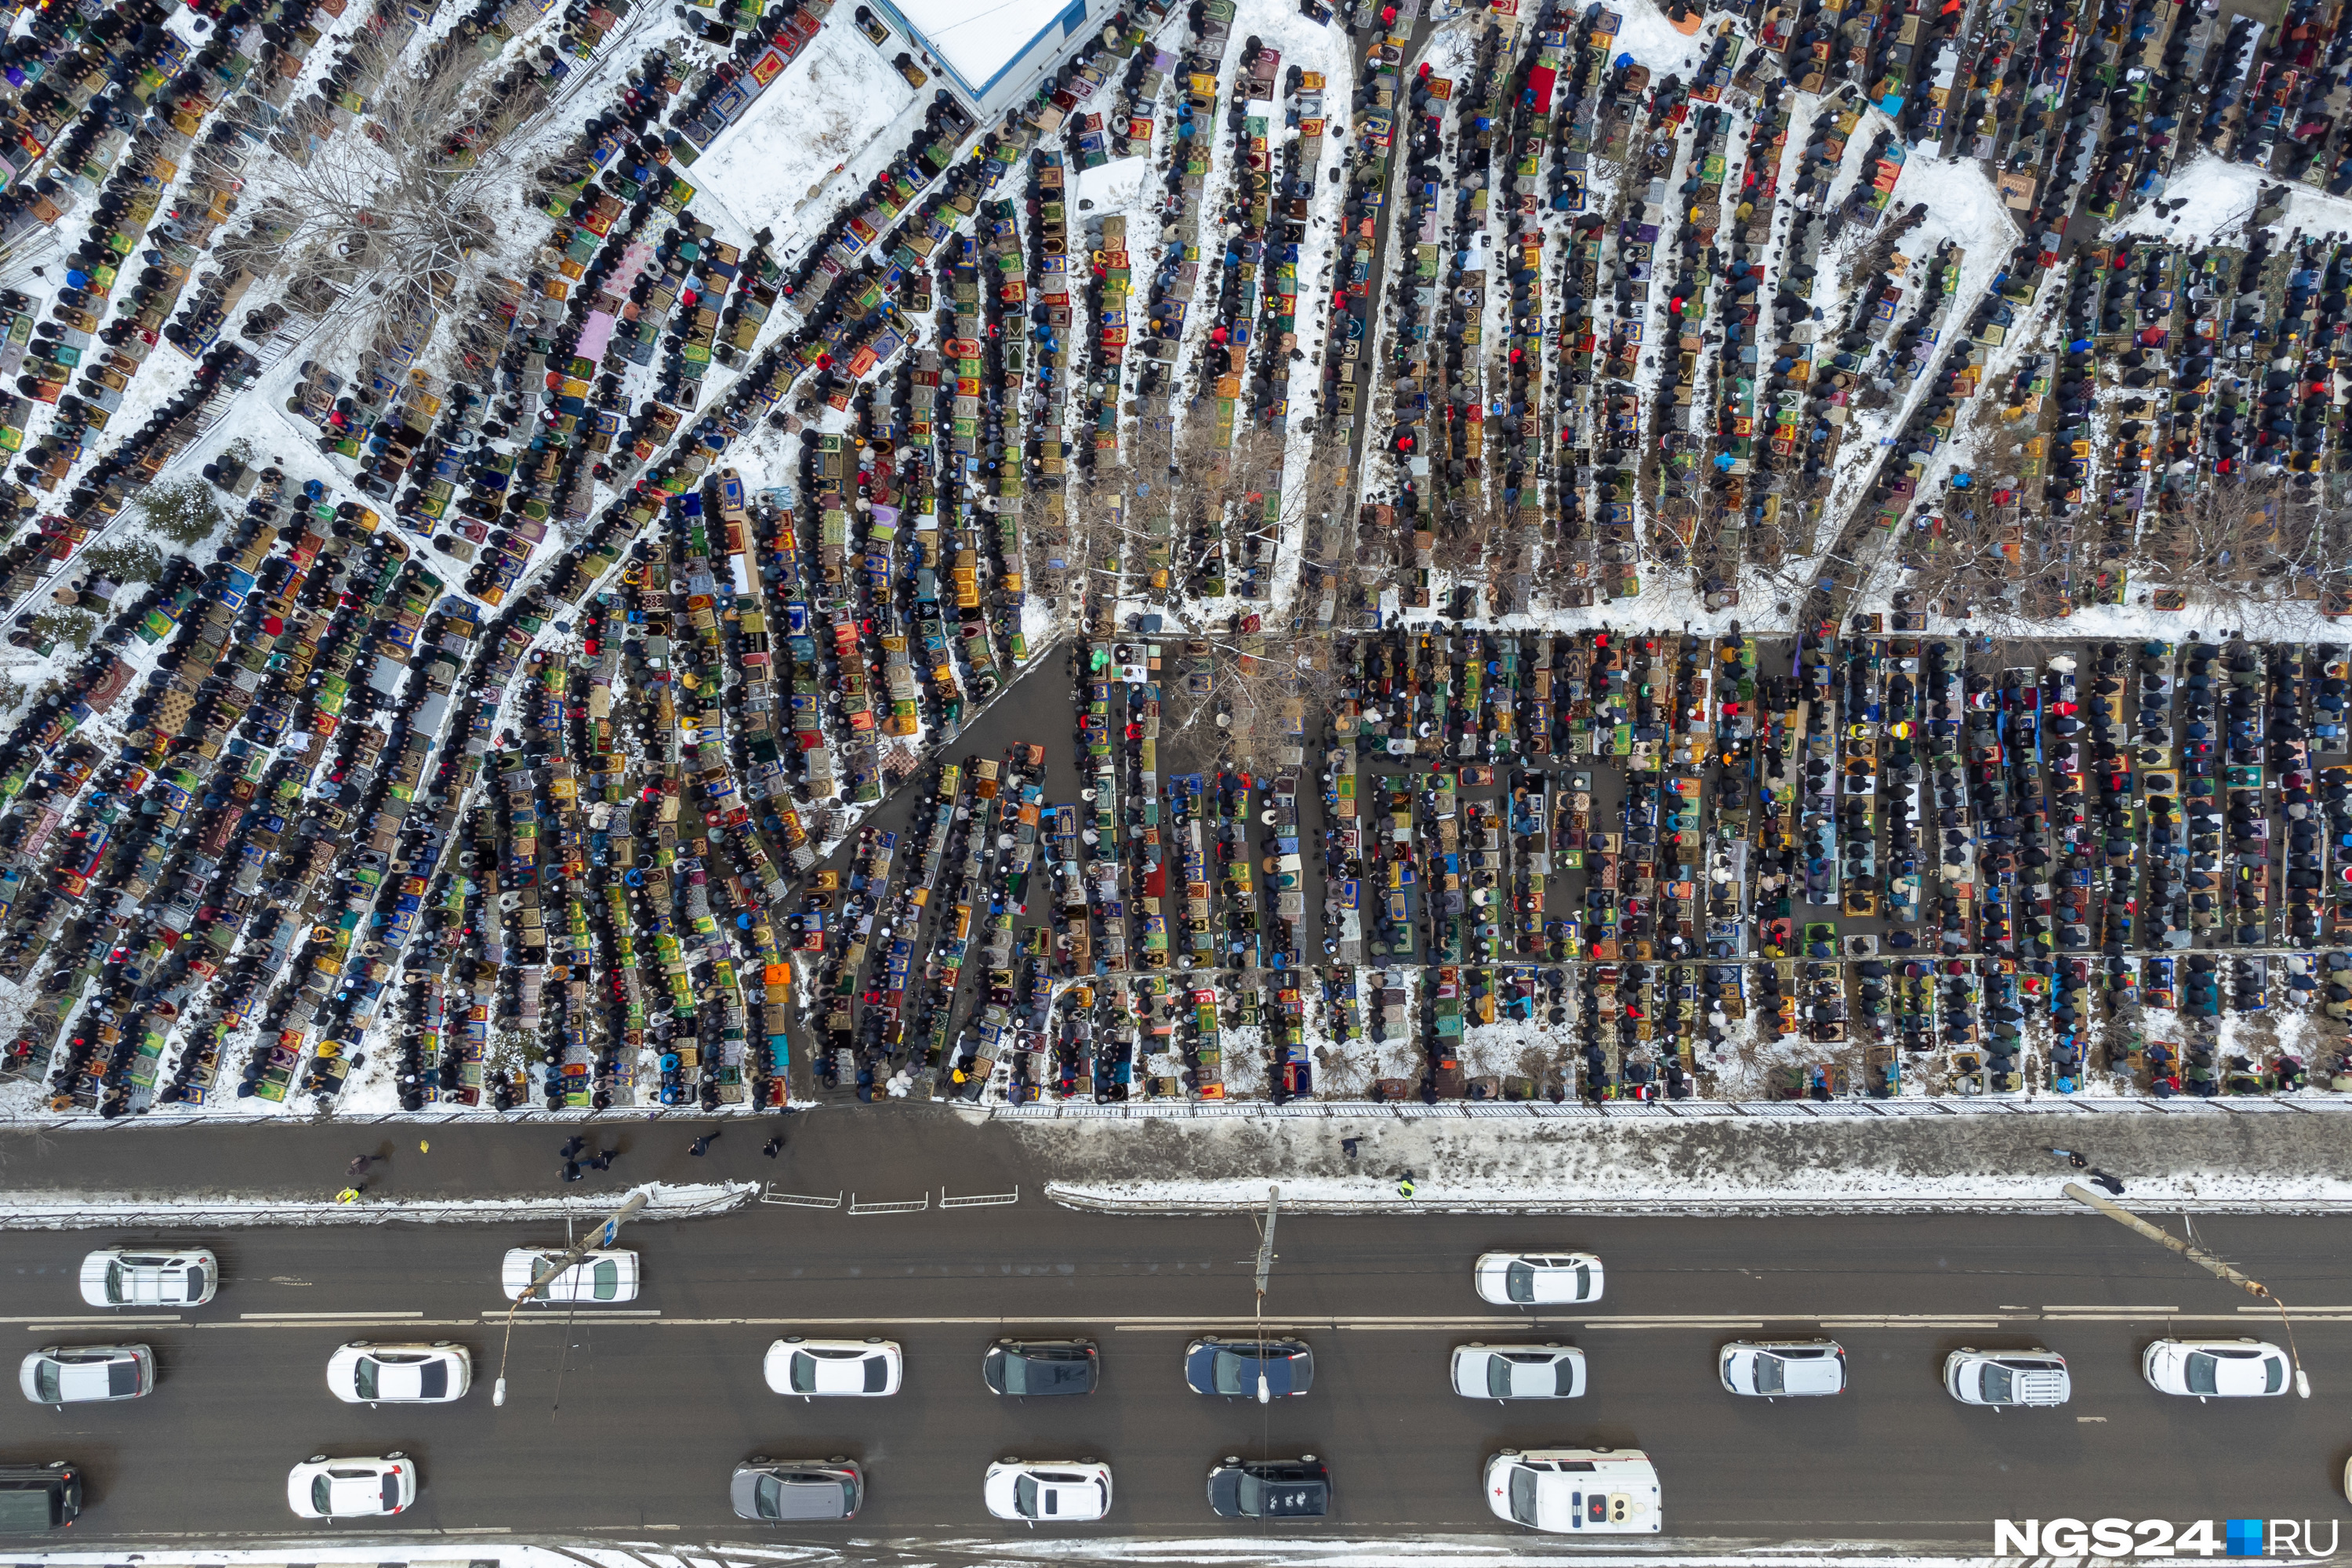 Ураза байрам красноярск. 25 Тысяч человек на фото. 5 Тысяч человек на фото. 1000 Человек на фото. 25 Тысяч человек визуально.